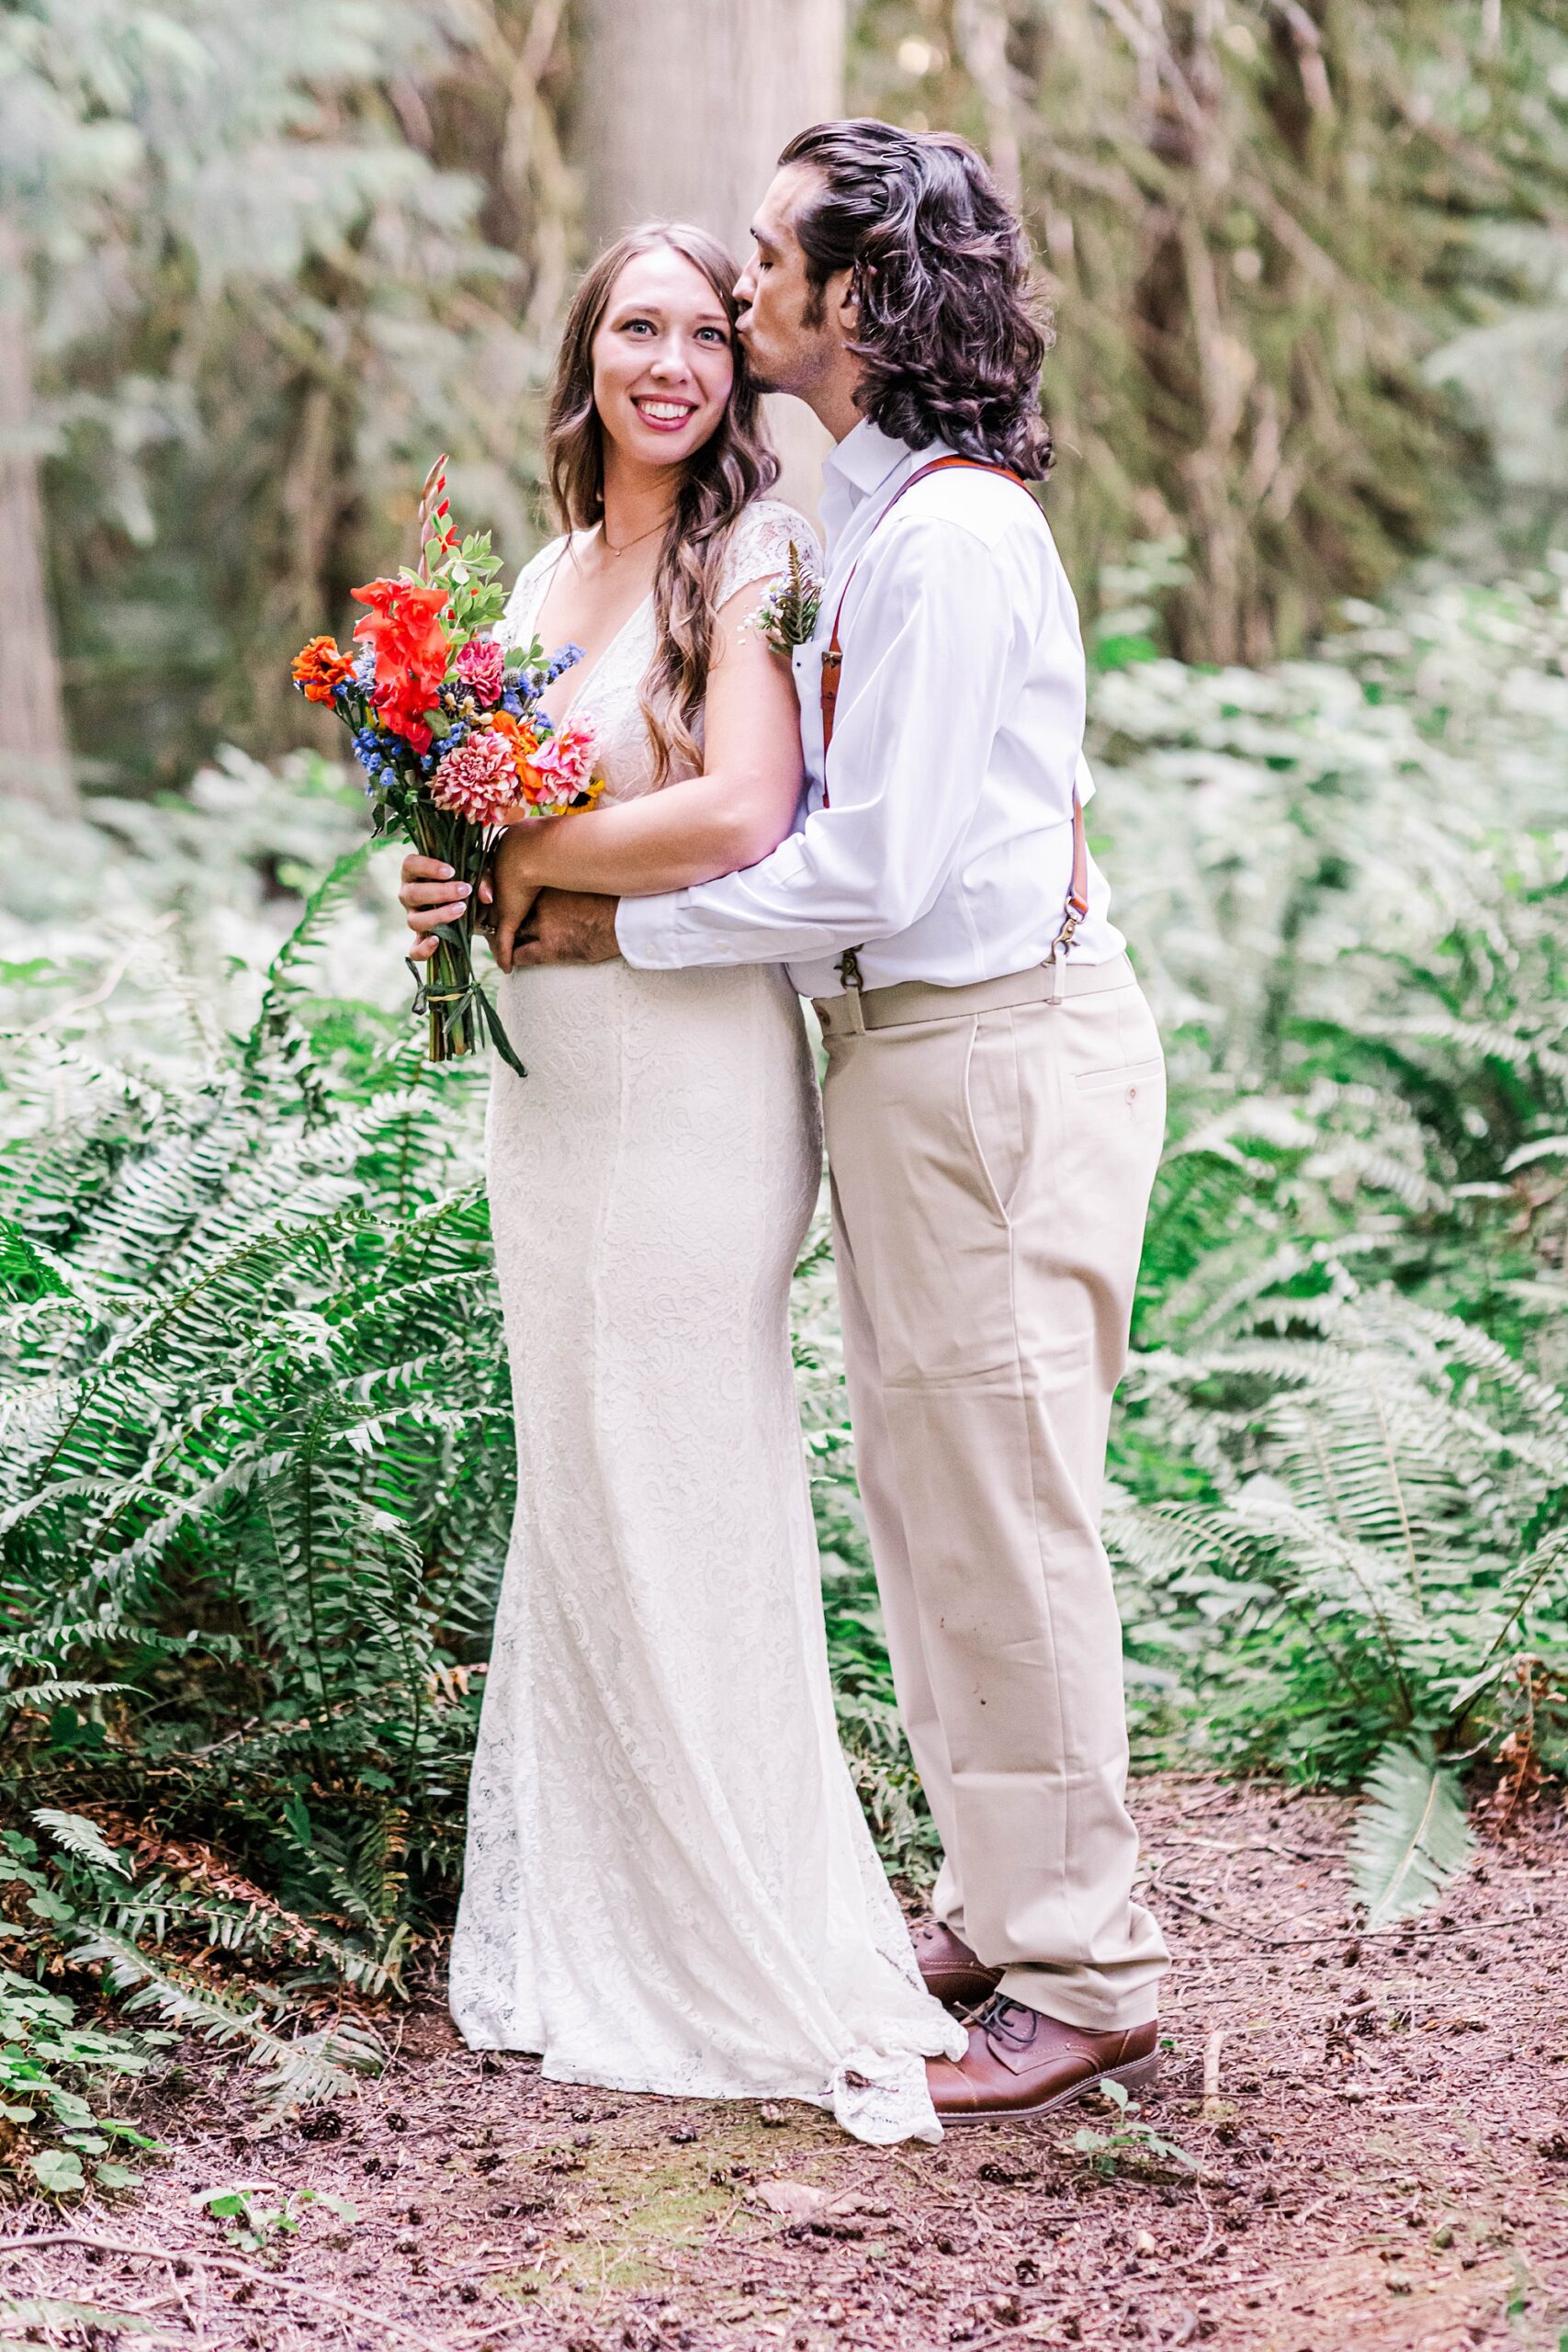 groom kisses bride after Intimate Wedding Ceremony in Estacada, Oregon